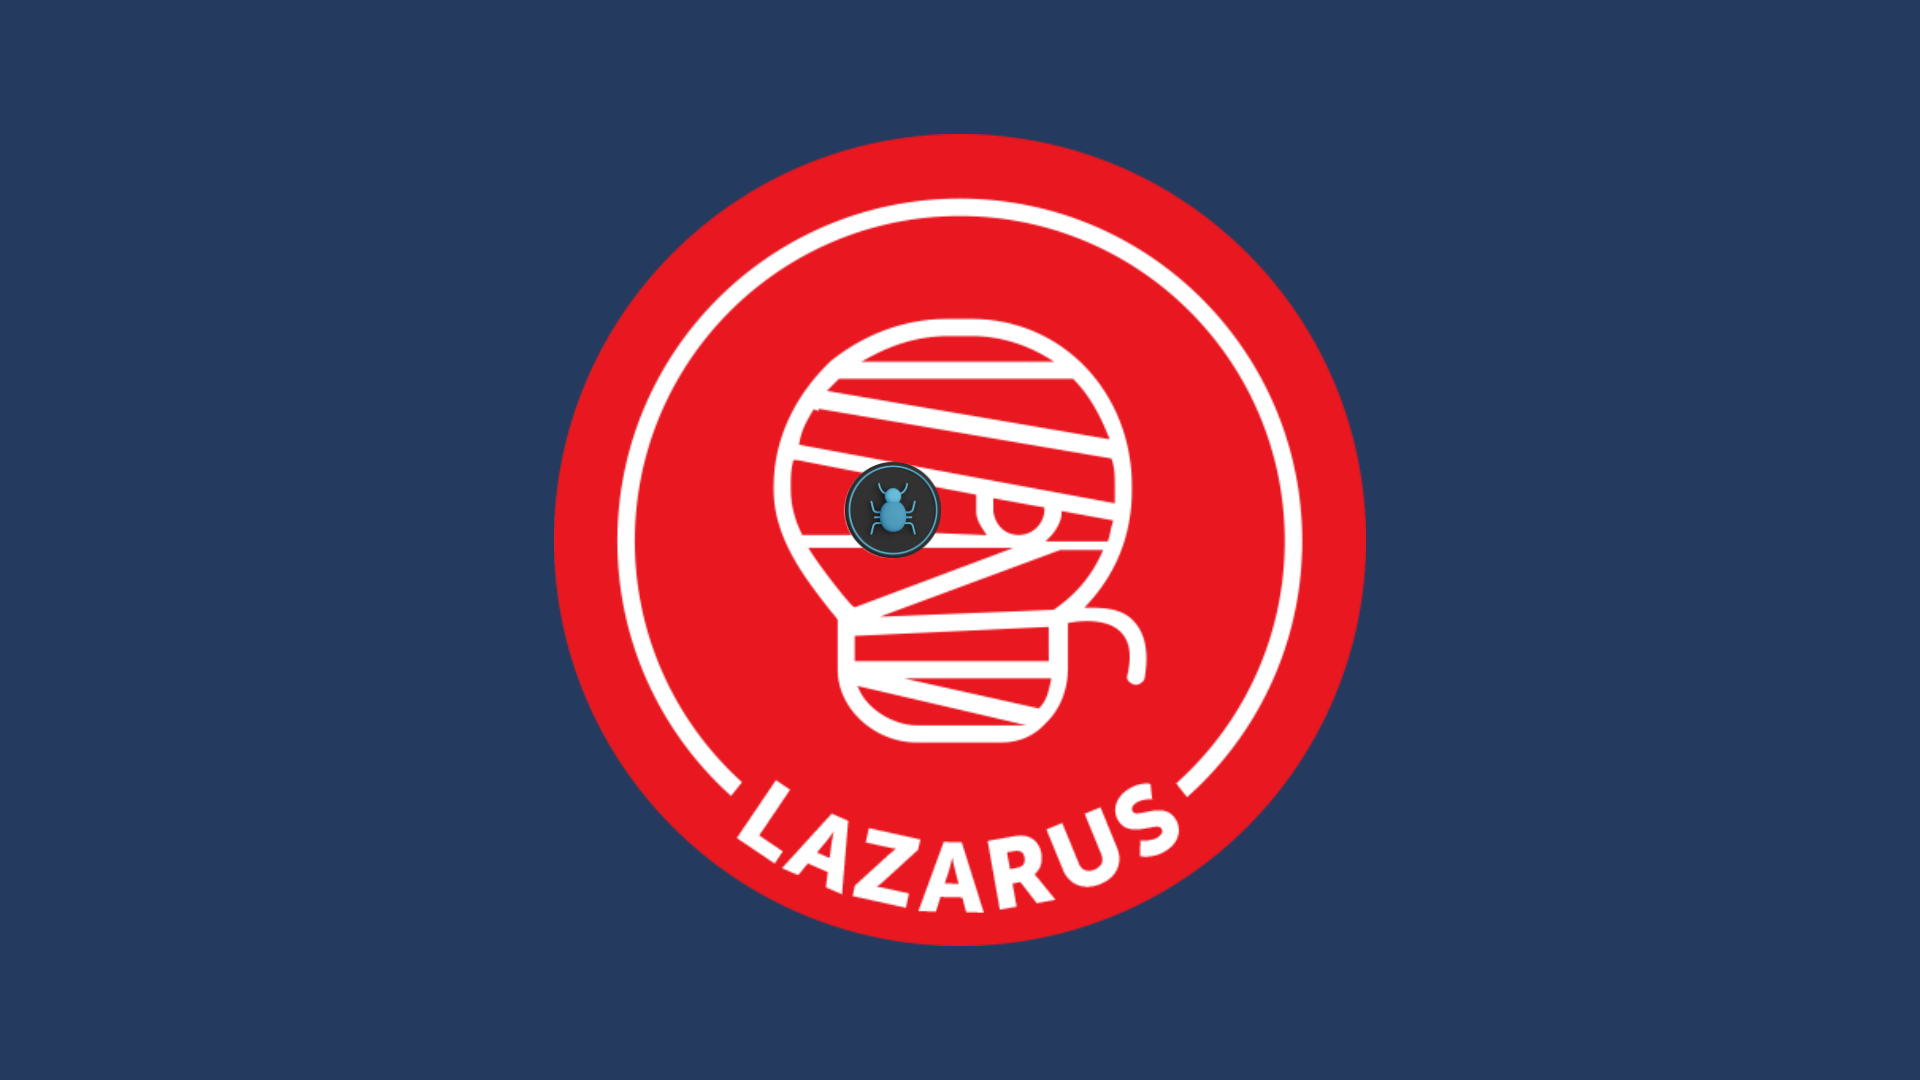 Grupo de Hackers Lazarus: Amenazas Cibernéticas Norcoreanas